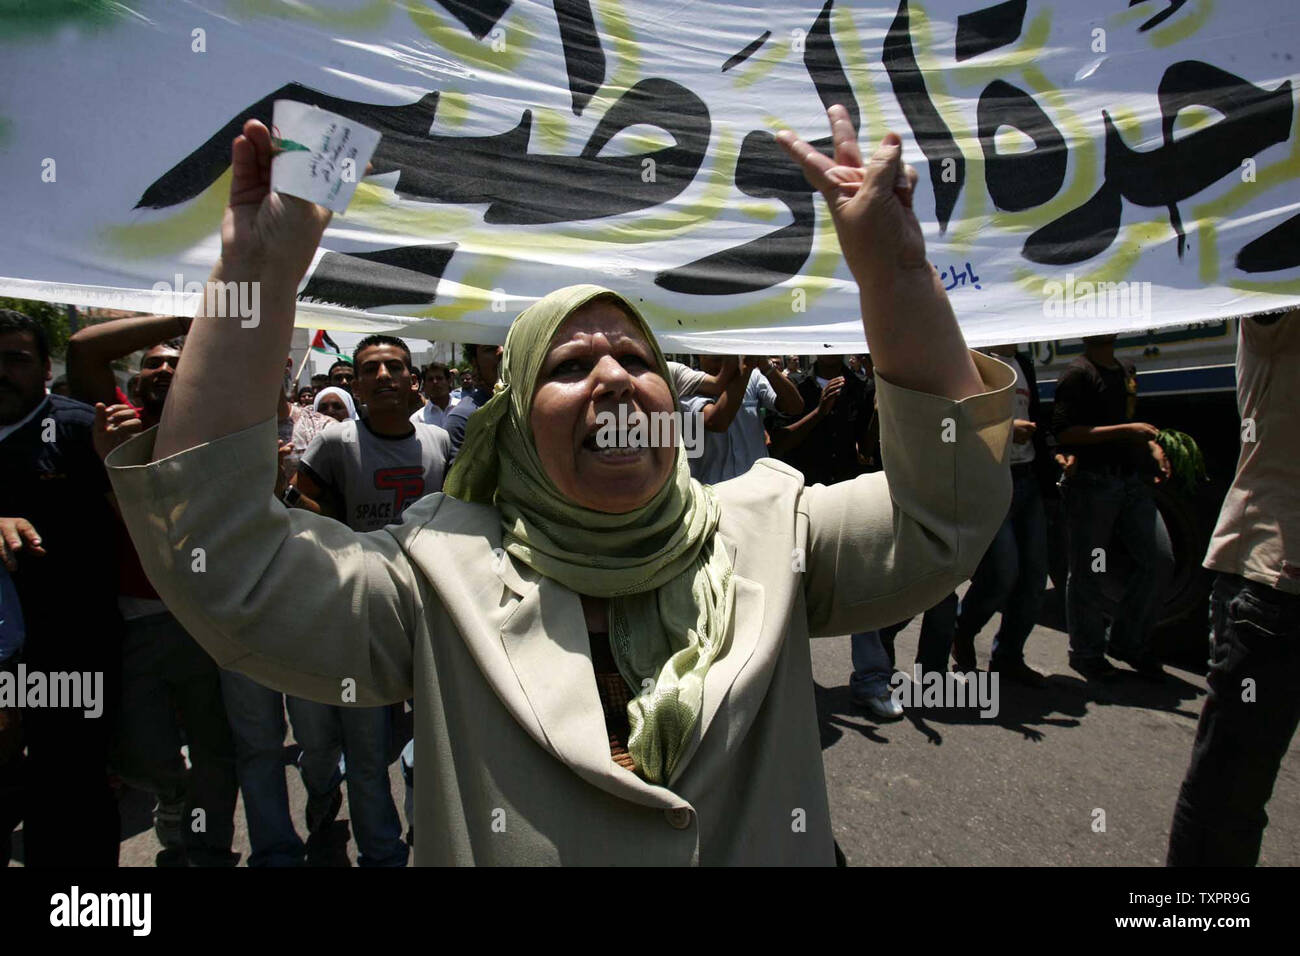 Palästinensische Demonstranten protestieren zur Fatah Kämpfer überzeugen zu stoppen Schießen während einer Auseinandersetzung mit Militanten der Hamas Bewegung (nicht dargestellt) in Gaza Stadt, im Gaza-streifen am 13. Juni 2007. Die ezzedine al-qassam Brigade (militärischen Flügel der Hamas die Islamische Widerstandsbewegung) hat uns gebeten, Kämpfer und Sicherheit Männer, die treu sind zur Fatah (die Bewegung der Verfechter des palästinensischen Präsidenten Mahmoud Abbas) ihren Sitz zu verlassen und ihre Waffen geben, wie drückt er eine Offensive gegen den Rivalen. (UPI Foto/Ismael Mohamad) Stockfoto